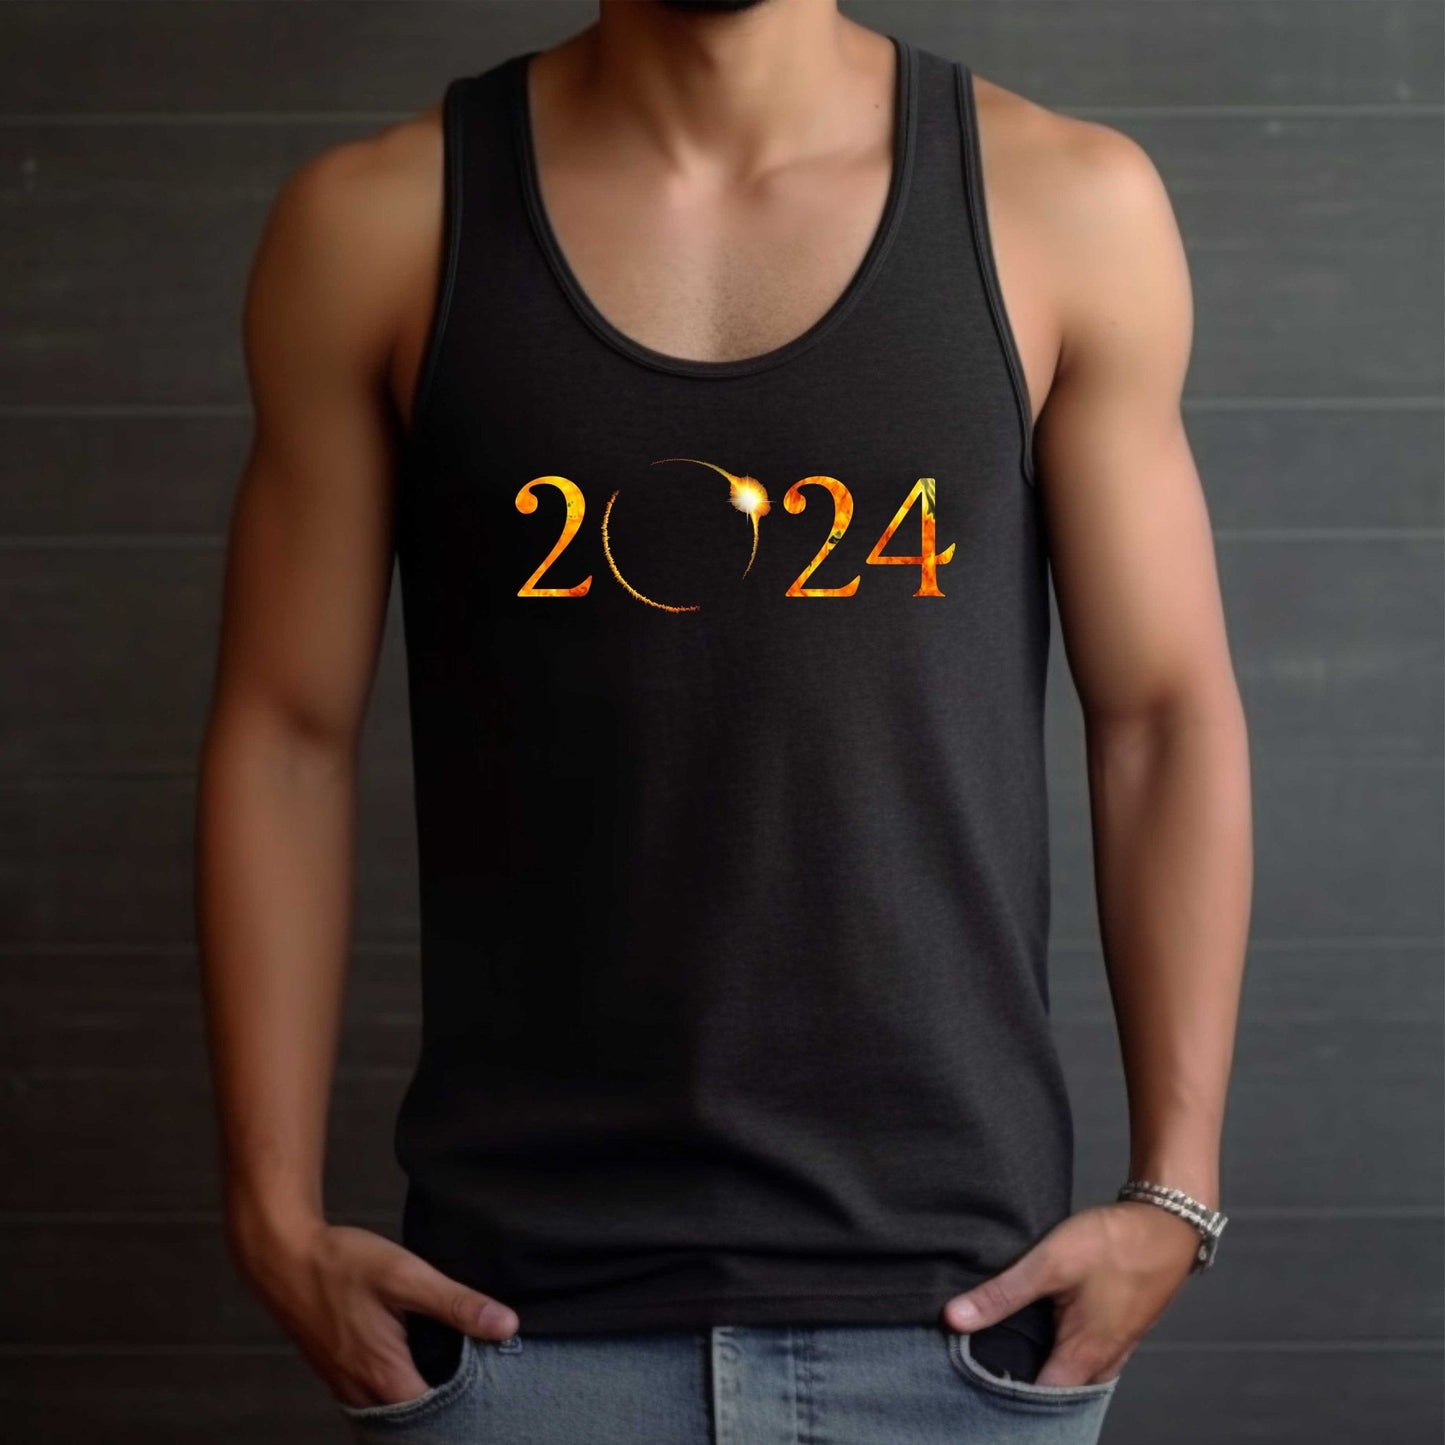 Solar Eclipse 2024 Black Tank Top Shirt - Unique Astronomical Design for Men, Women - SBS T Shop